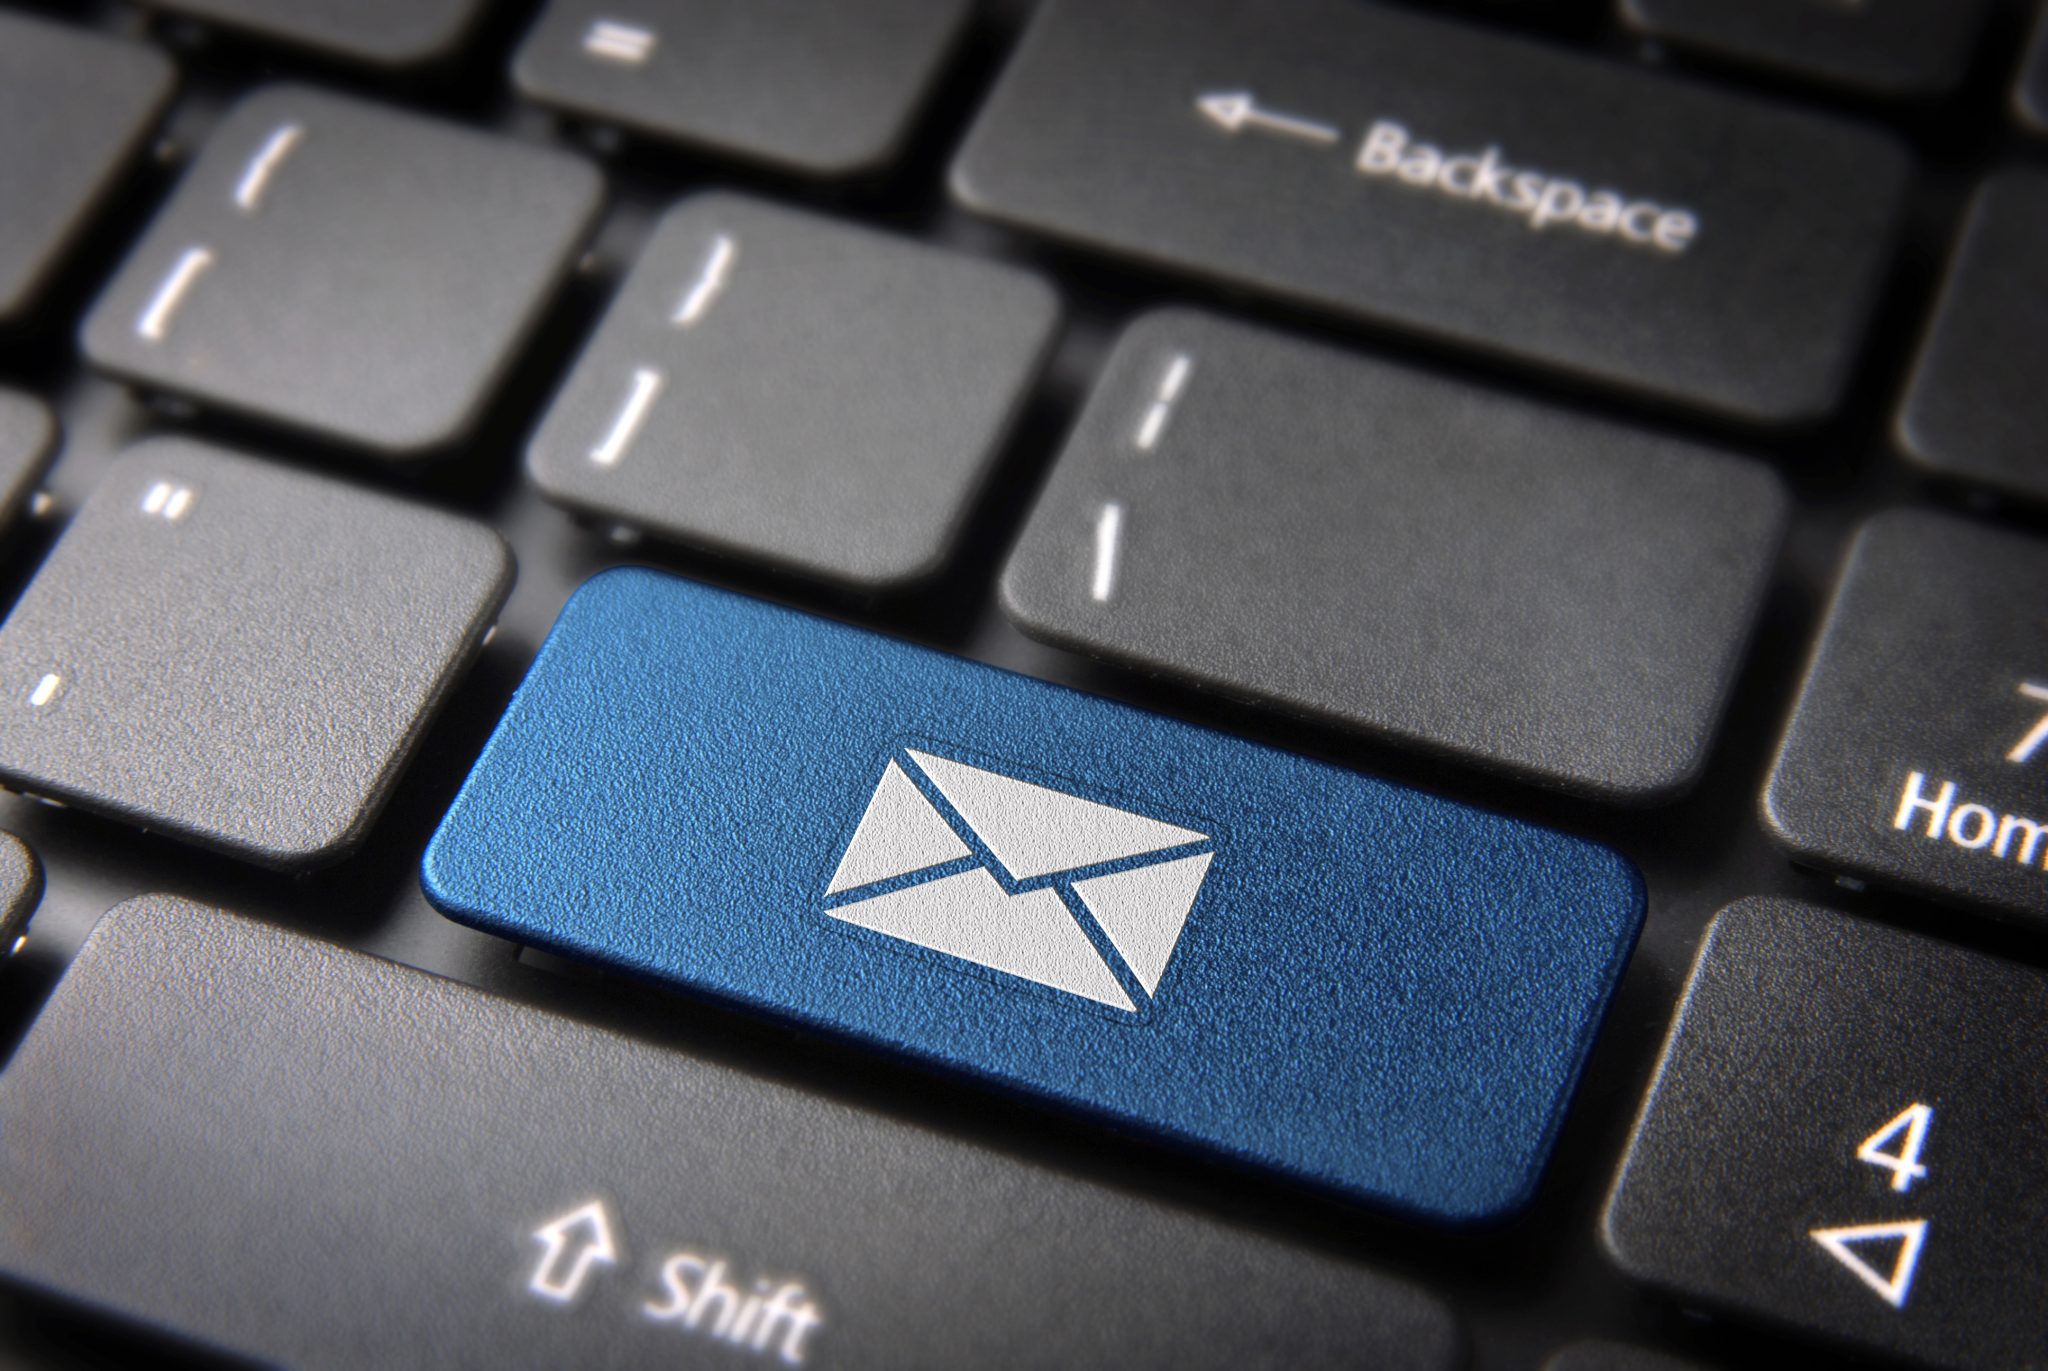 Cara memeriksa apakah email aman dan tidak jatuh untuk penipuan